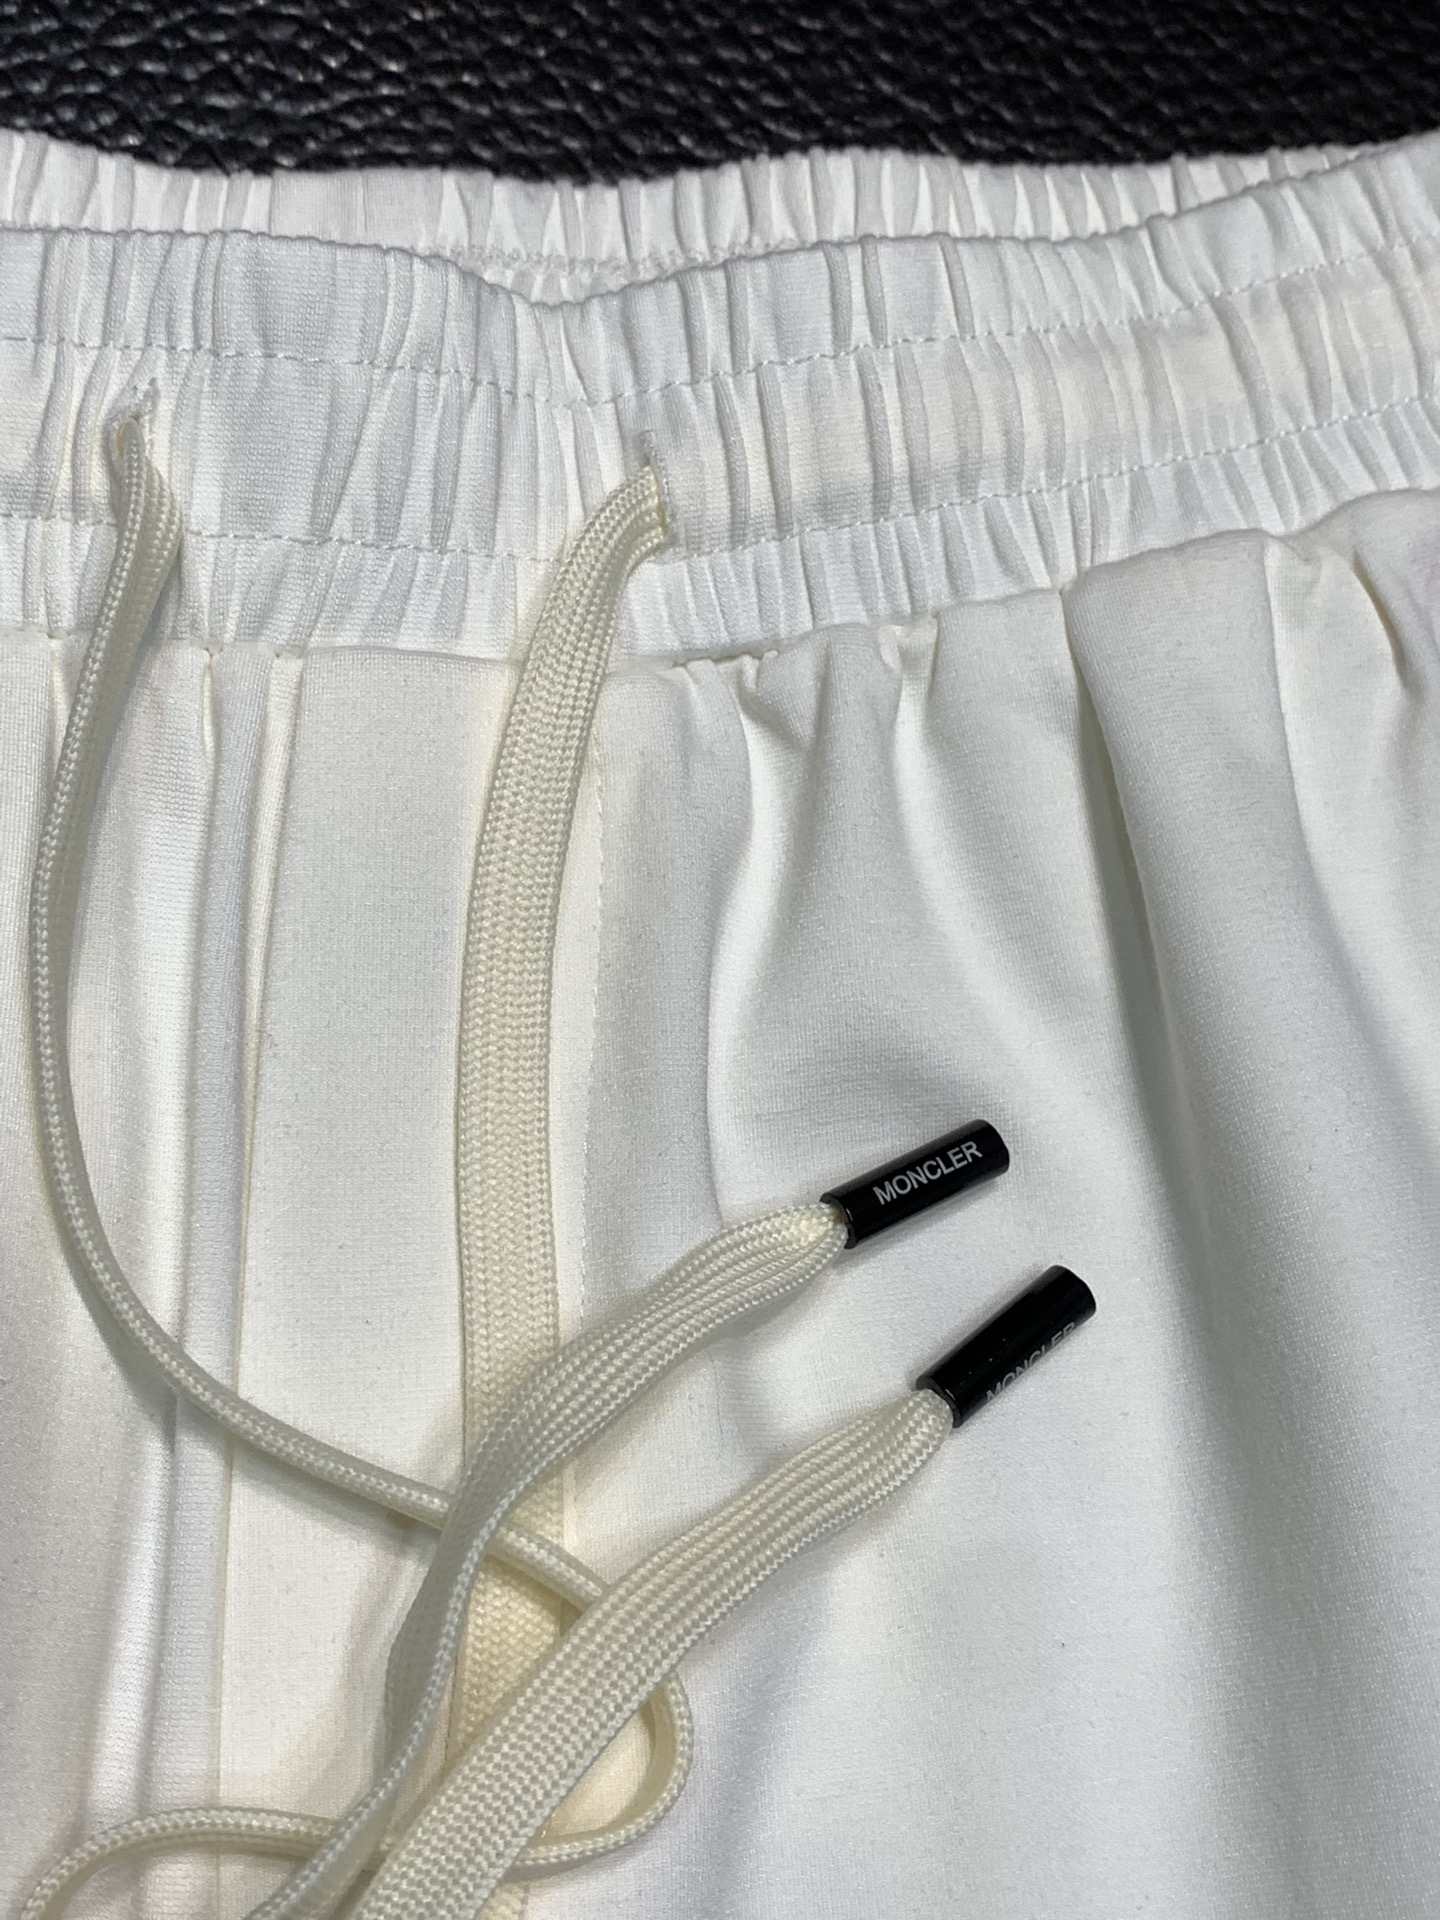 モンクレール ショートパンツ メンズコピー ズボン パンツ 純綿 柔らかい 通気性いい 夏服 シンプル ゆったり ホワイト_4